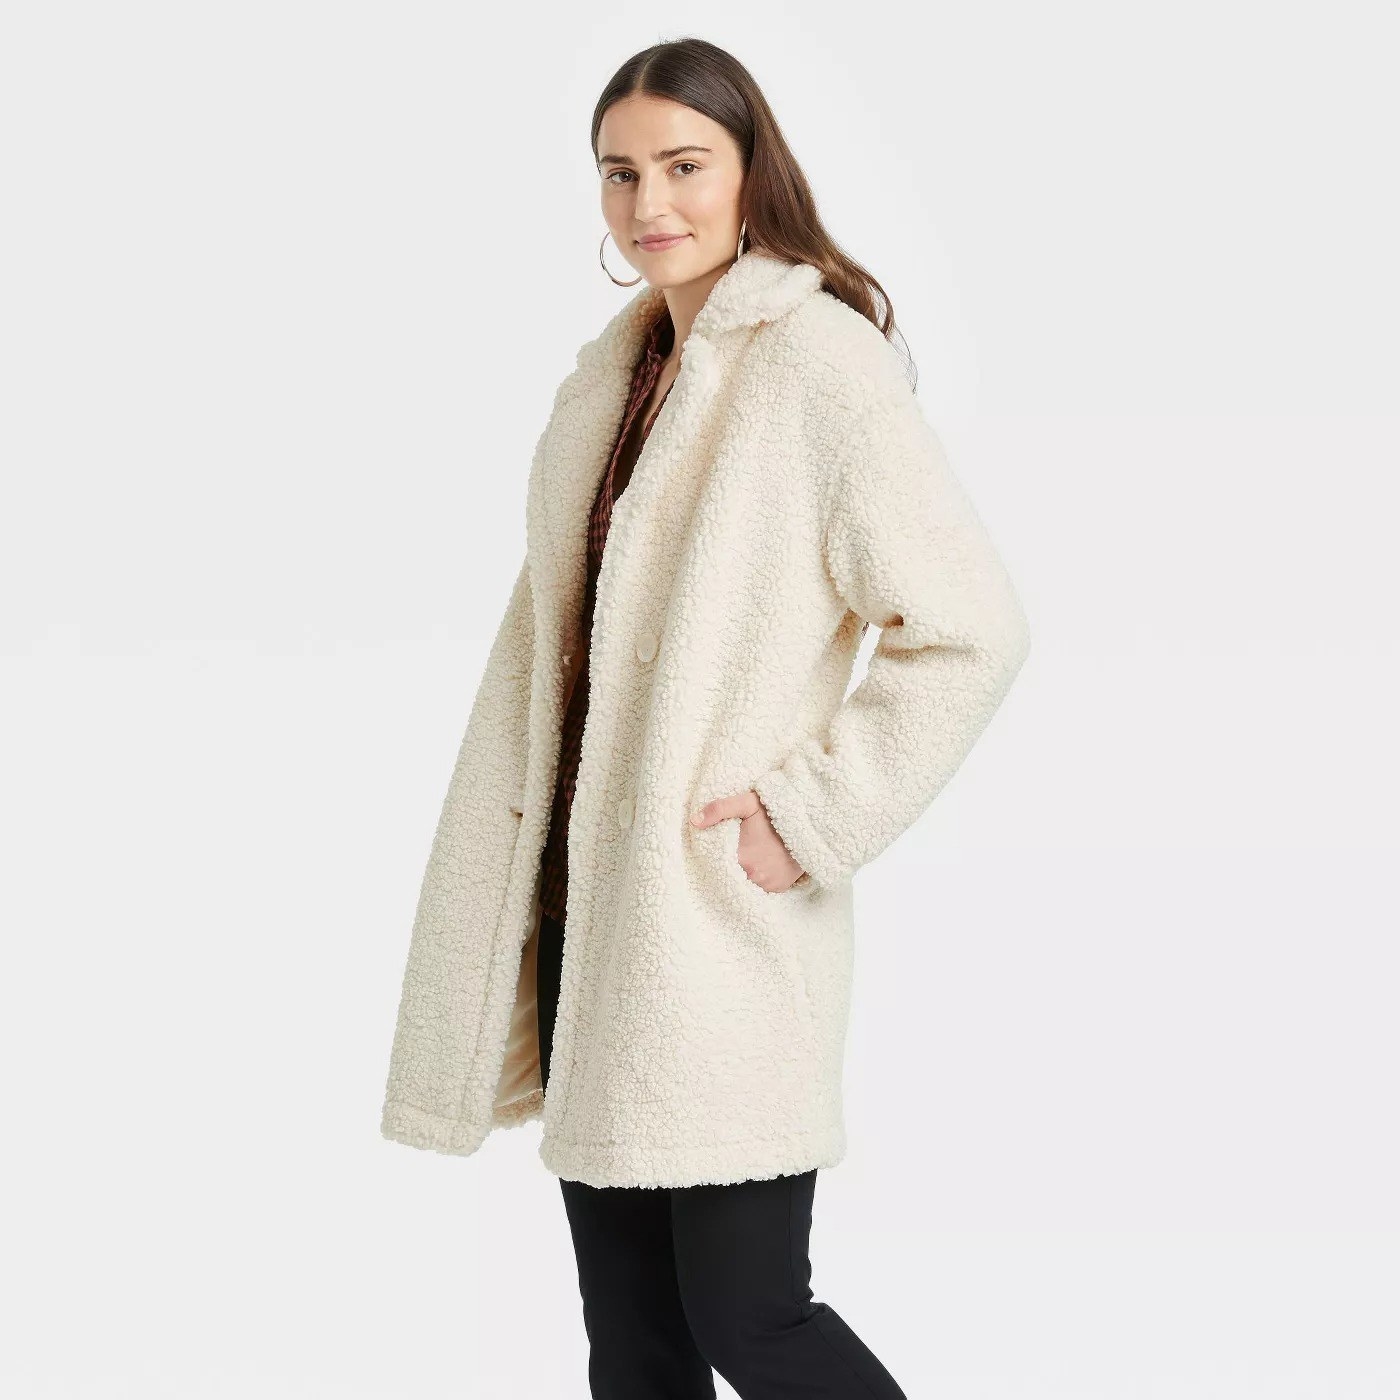 model wearing the coat in cream